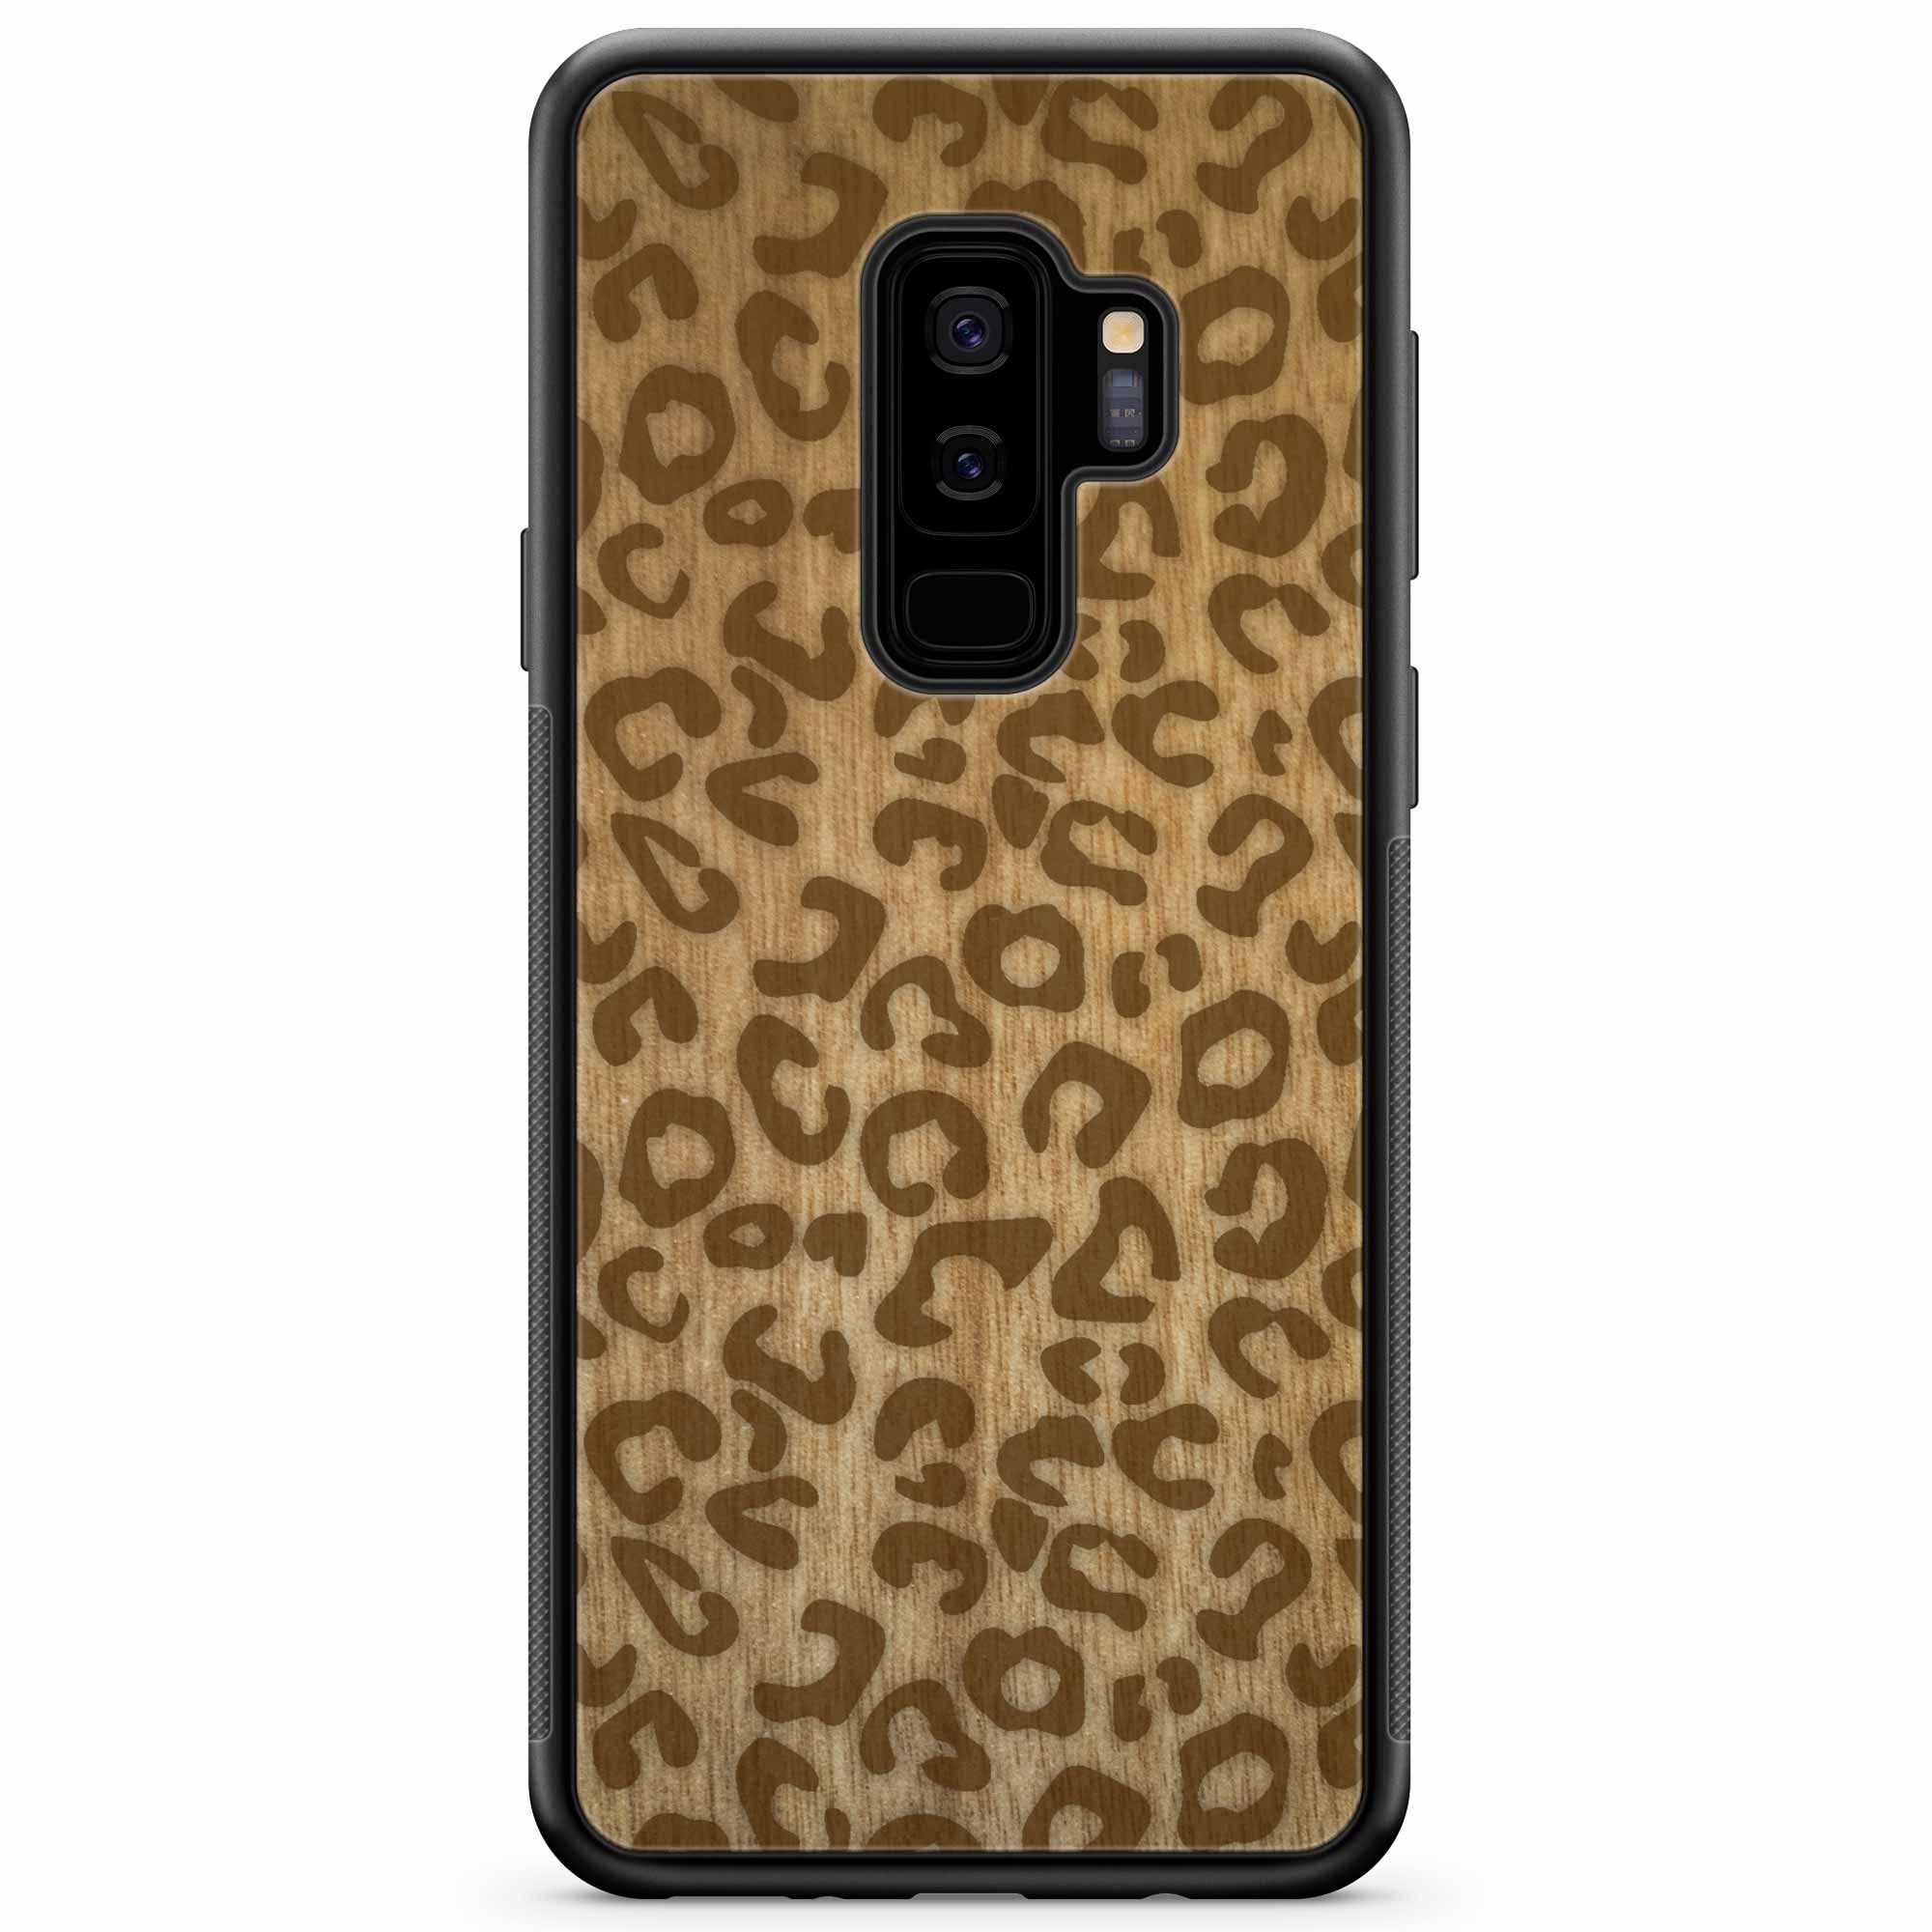 Funda de madera para teléfono con estampado de guepardo para Samsung S9 Plus